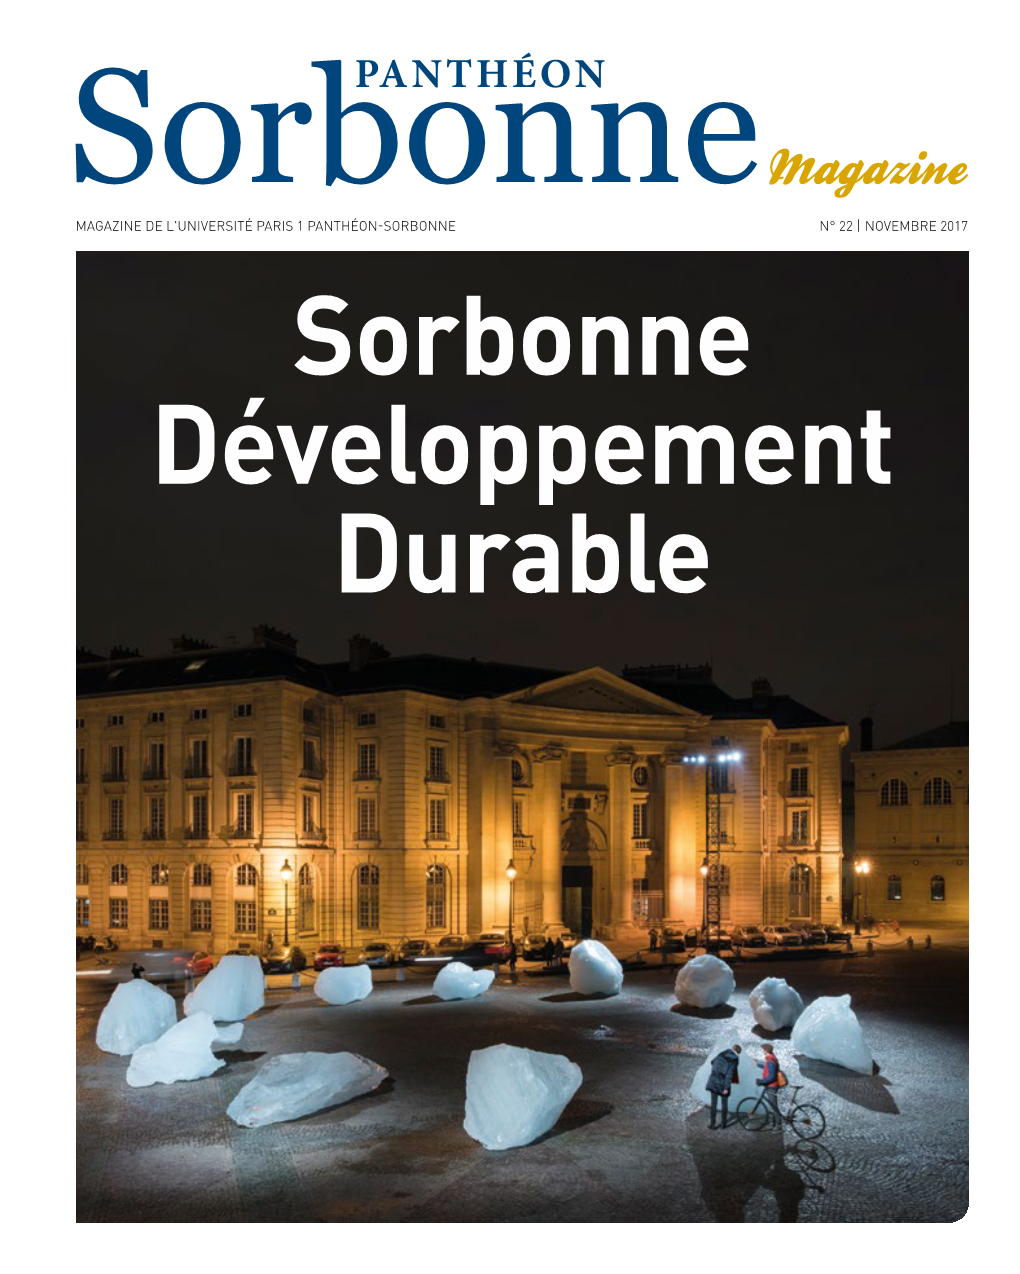 Sorbonne Développement Durable